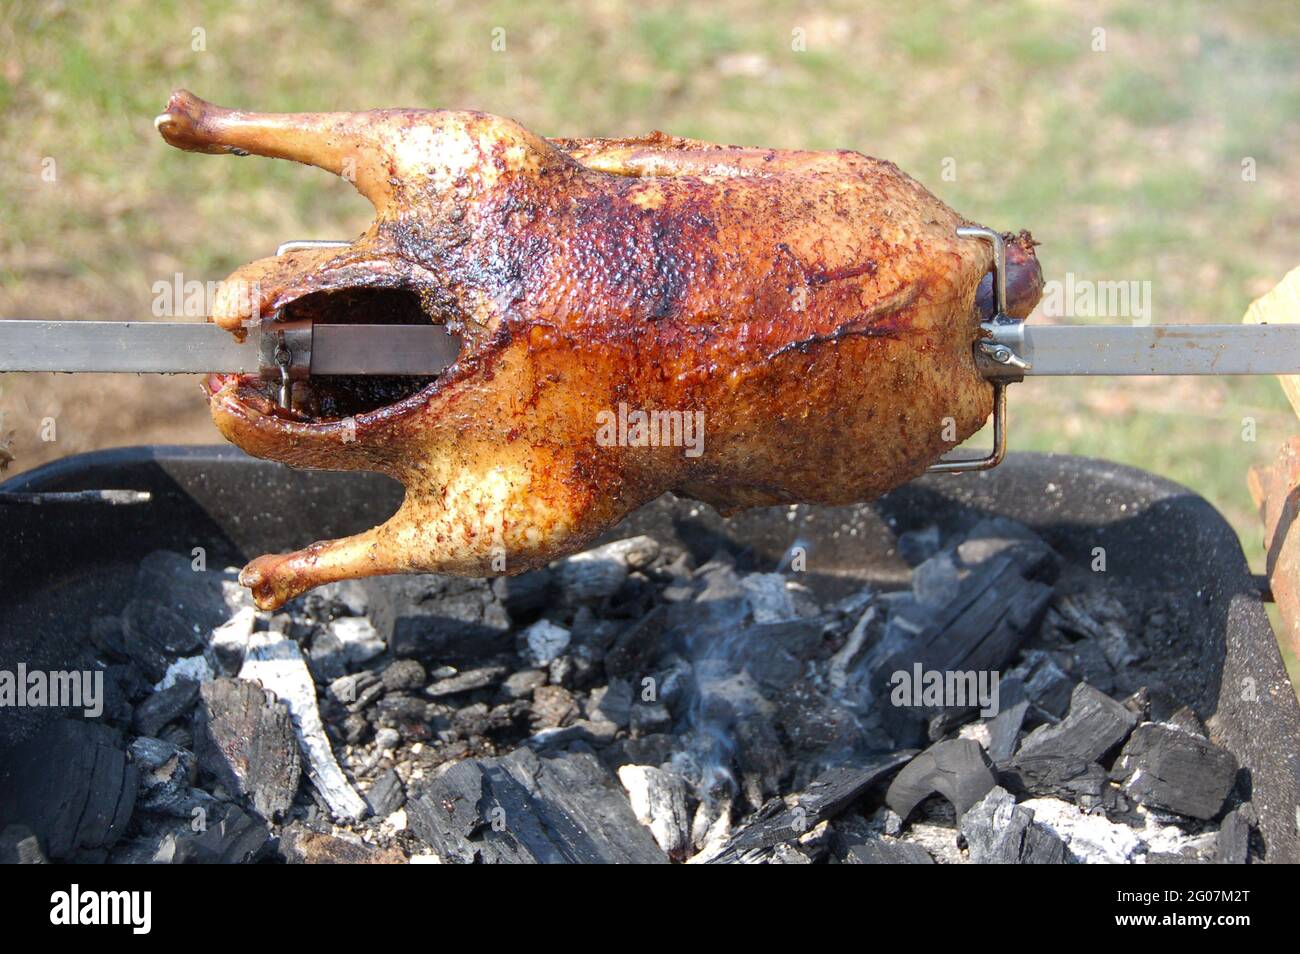 Appétissant canard grillé sur la brochette de broche. Rôtis sur un barbecue traditionnel. La carcasse entière de canard rôtisent sur des coals chauds. Banque D'Images